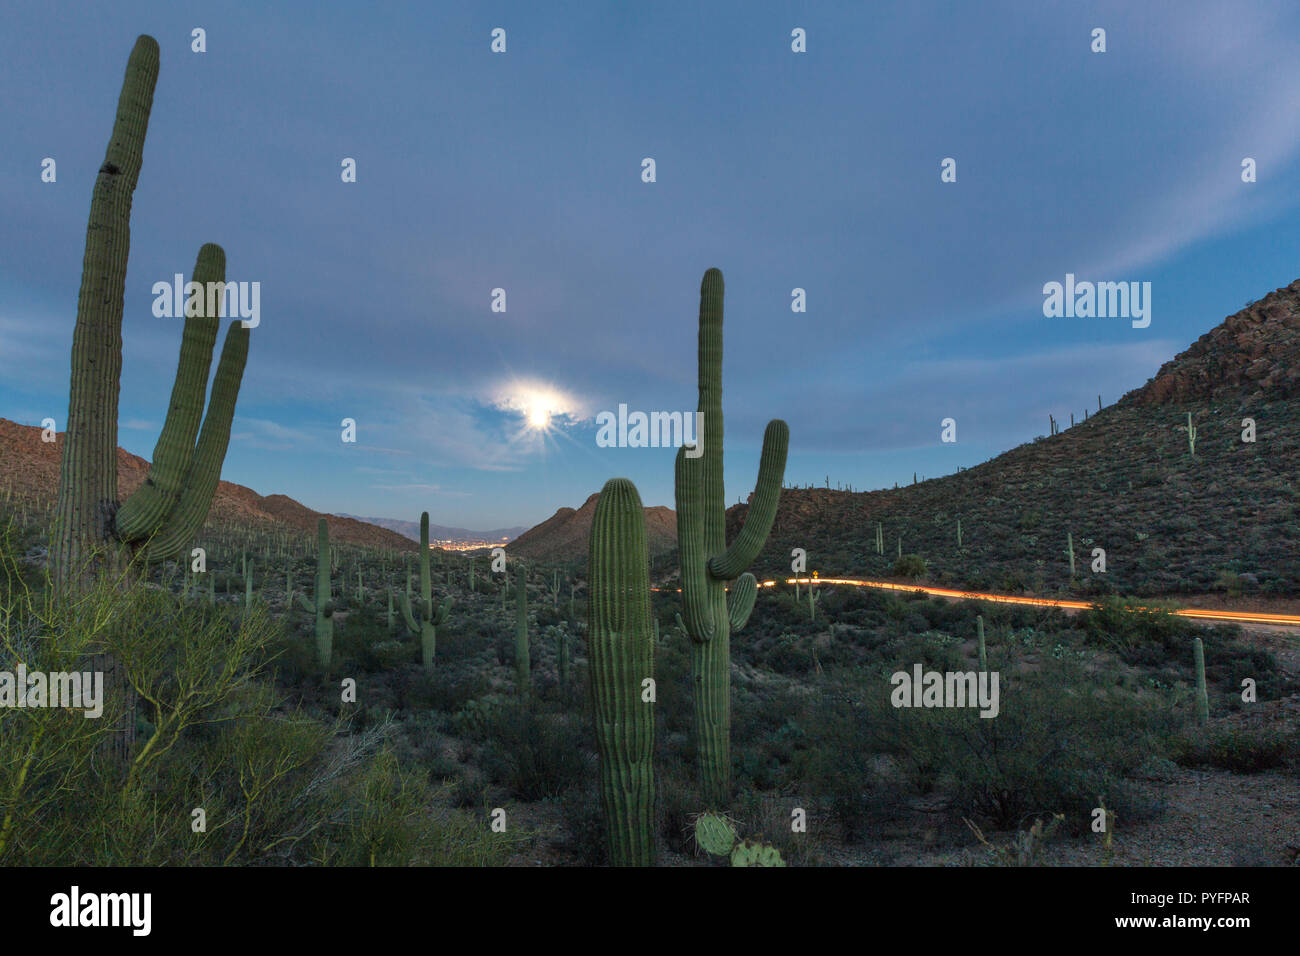 Cactus géant saguaro, Carnegiea gigantea, sous la pleine lune à l'entrée dans les montagnes de Tucson, Tucson, Arizona, États-Unis d'Amérique Banque D'Images